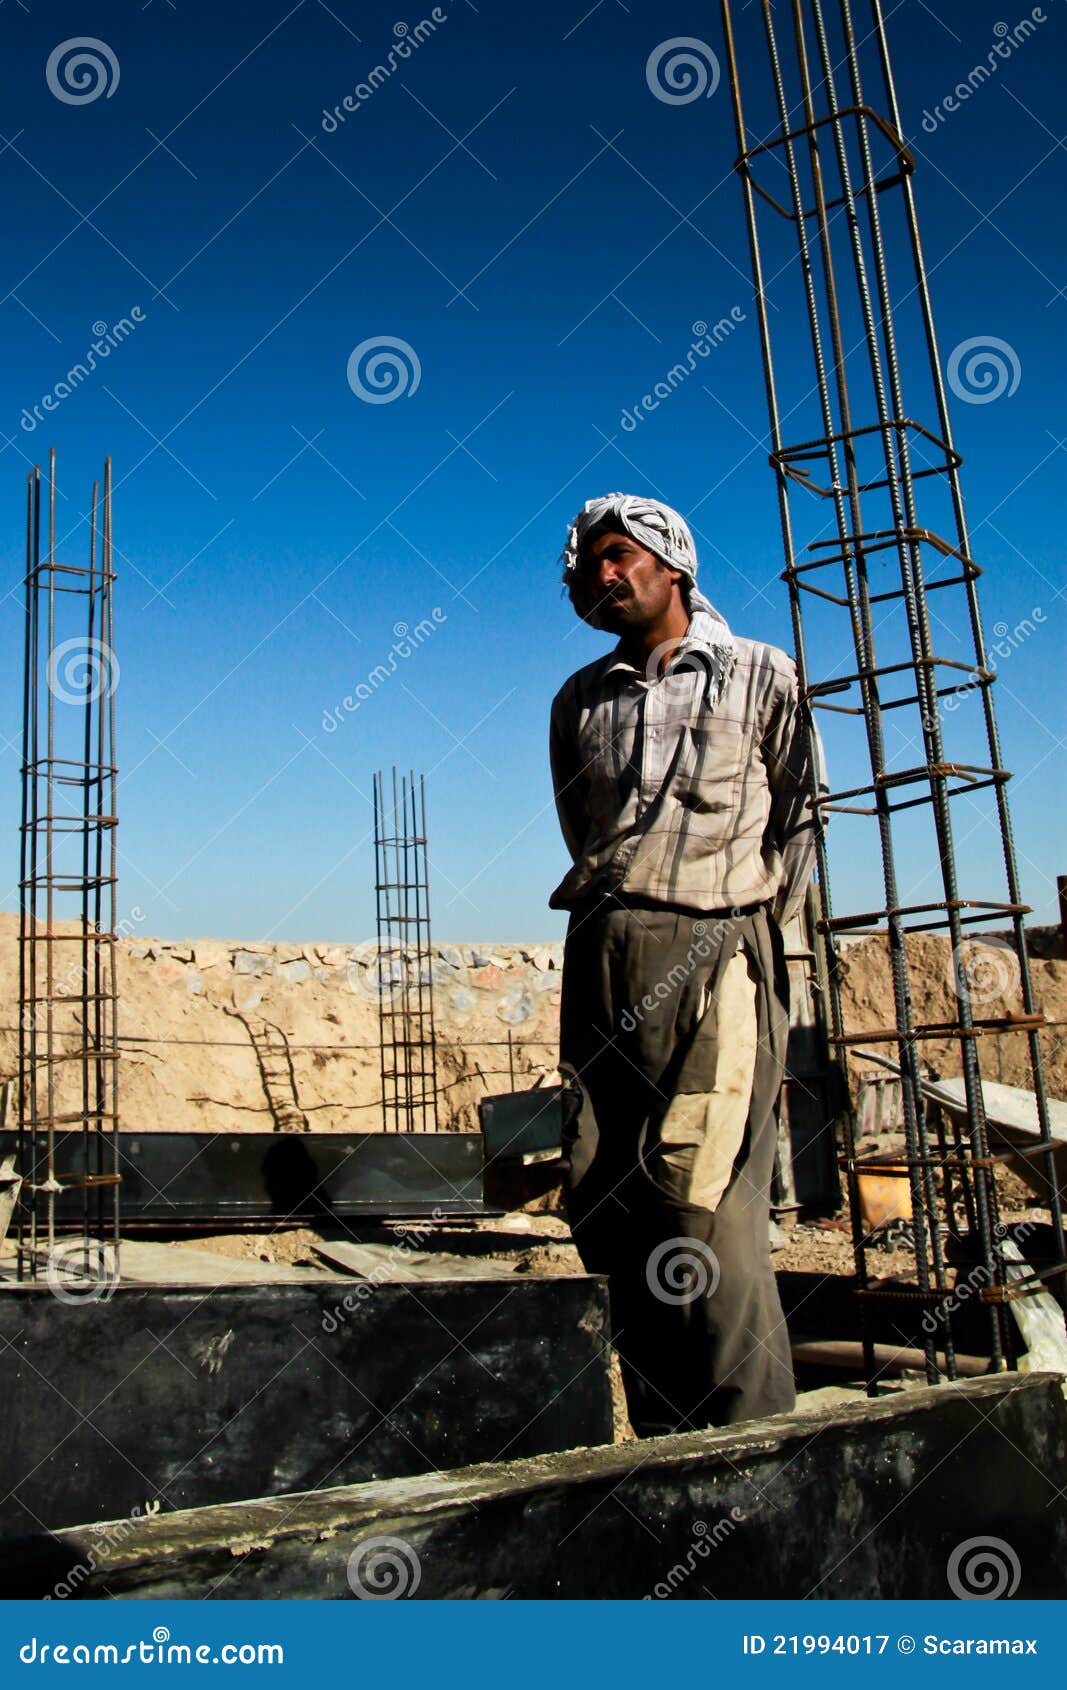 General contractor jobs in afghanistan